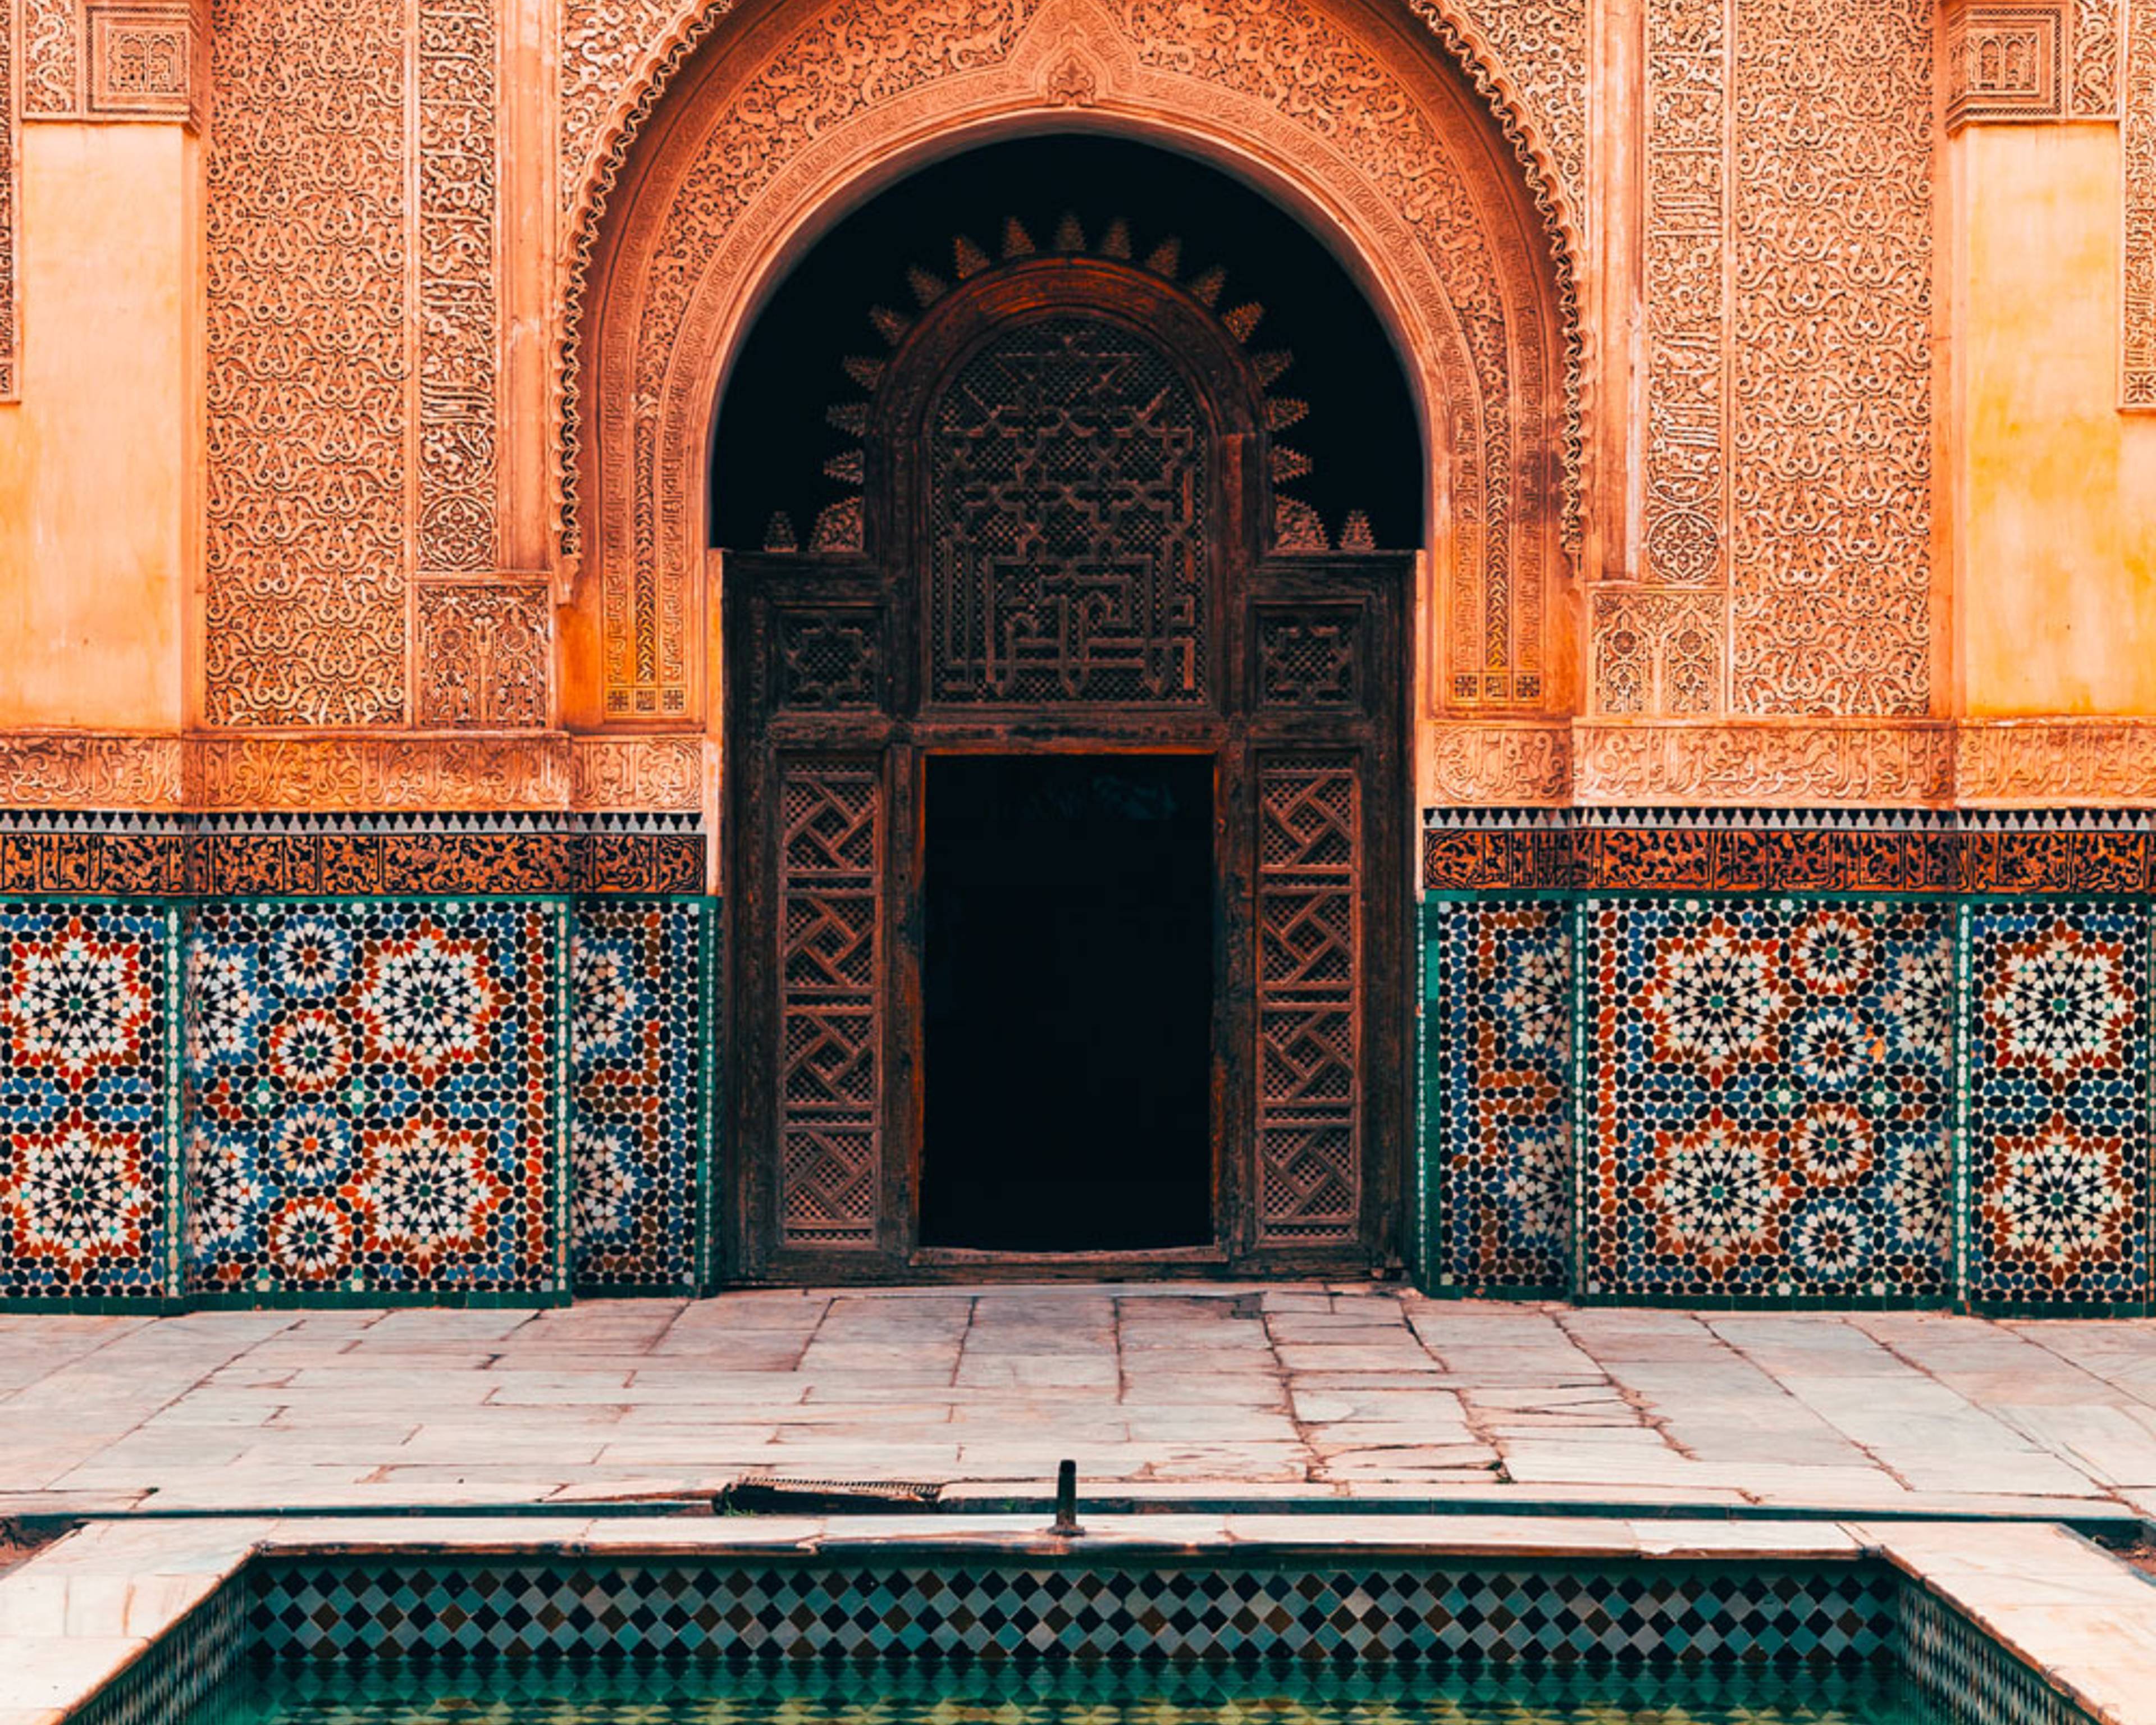 Uw op maat gemaakte reis in juli in Marokko